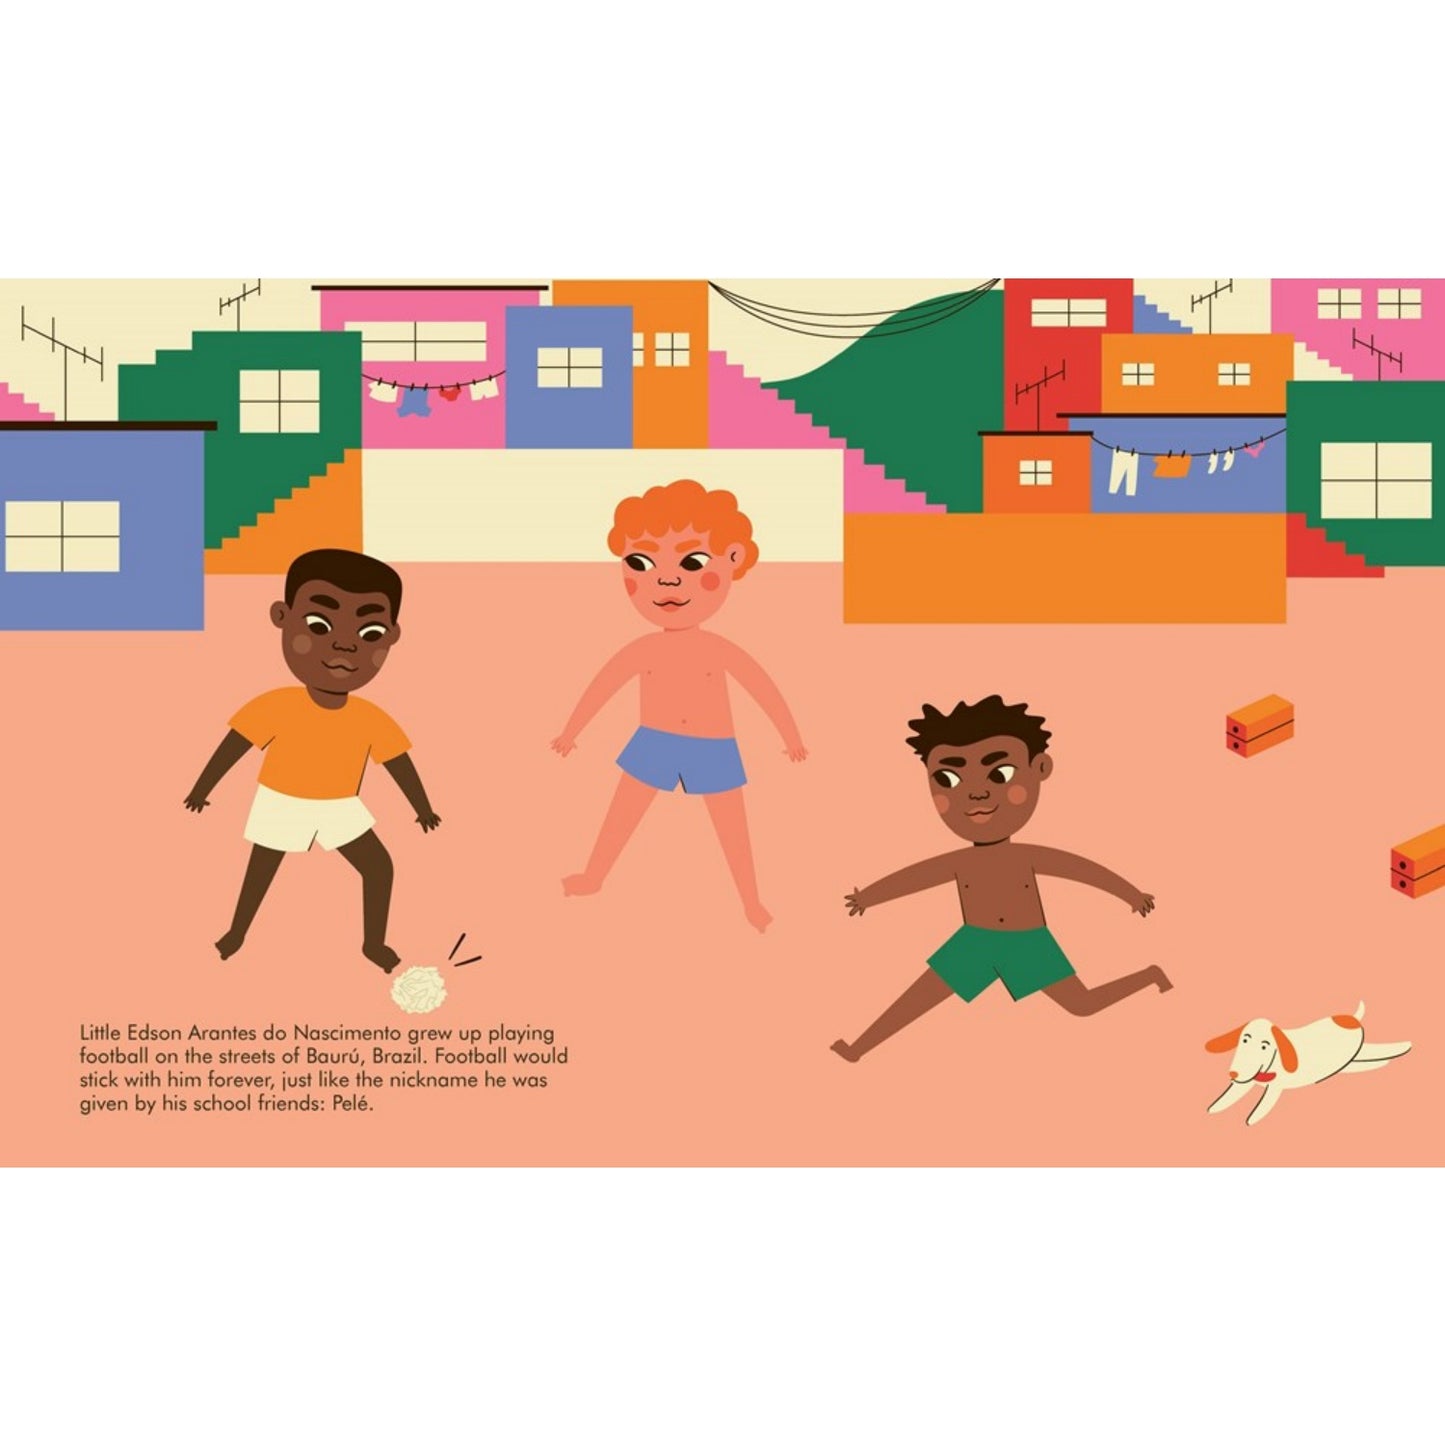 Pelé | Little People, BIG DREAMS | Children’s Book on Biographies